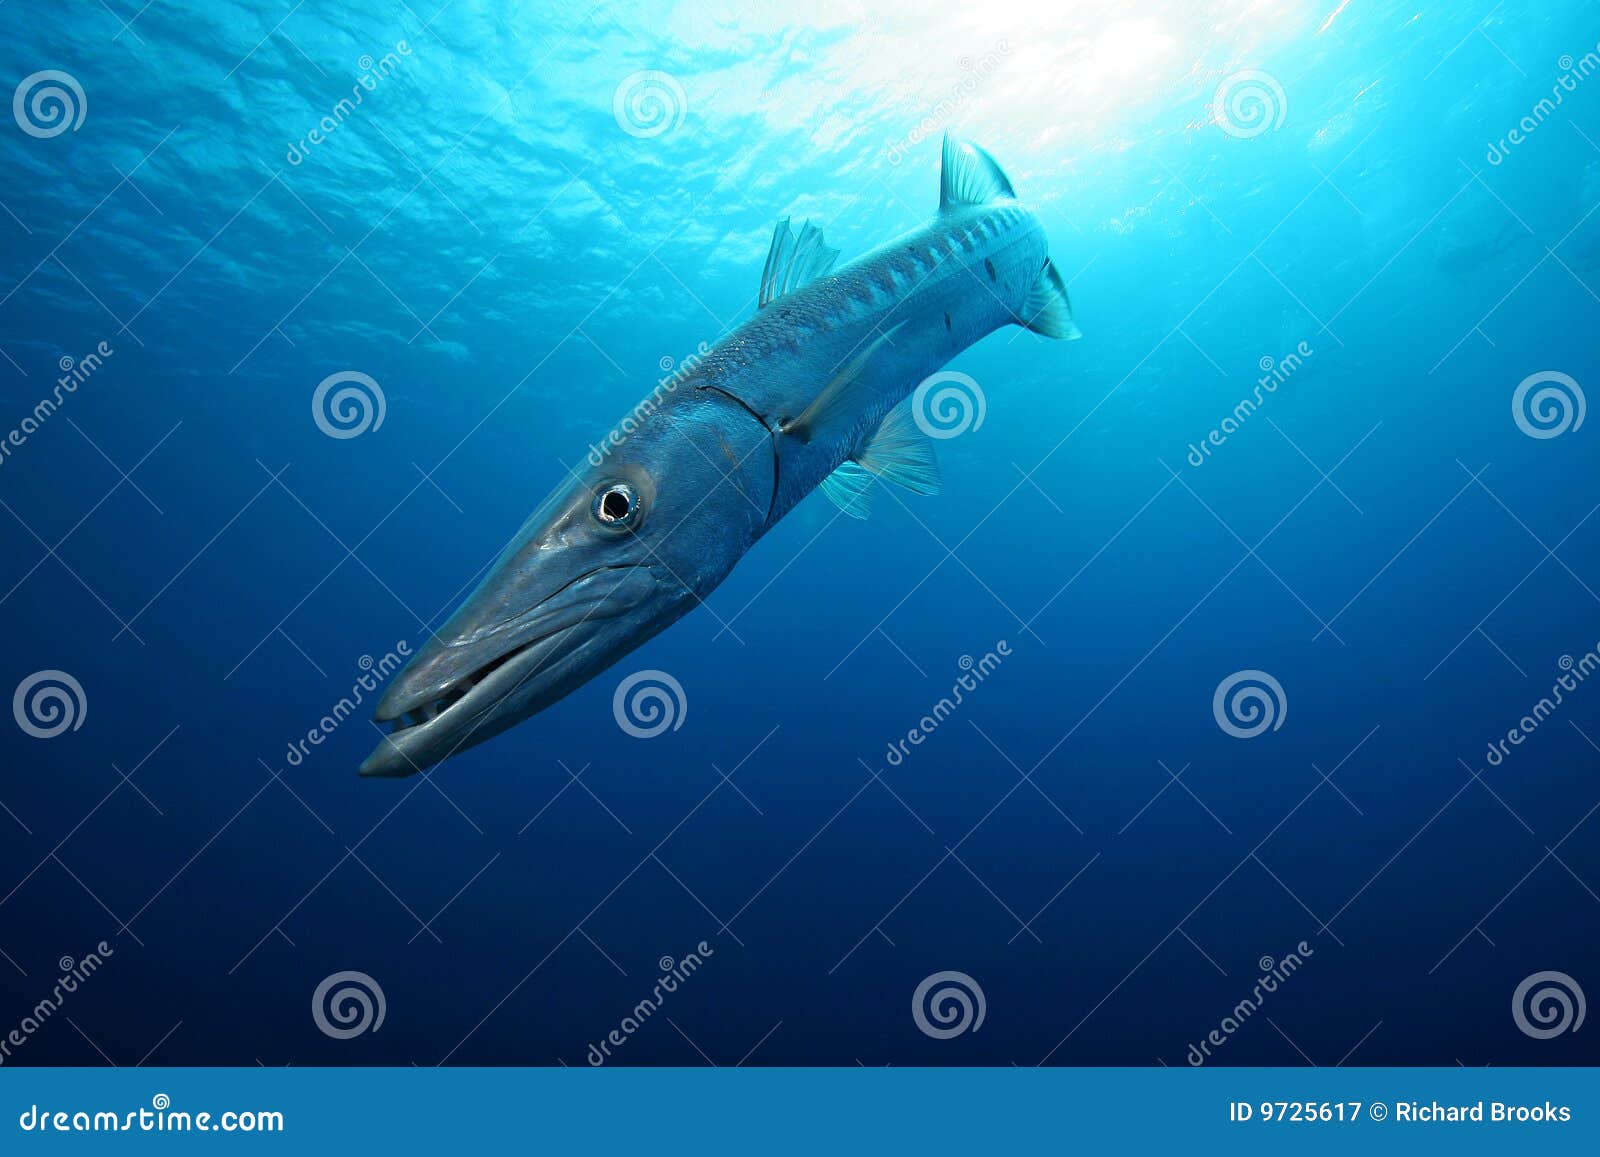 barracuda in the blue